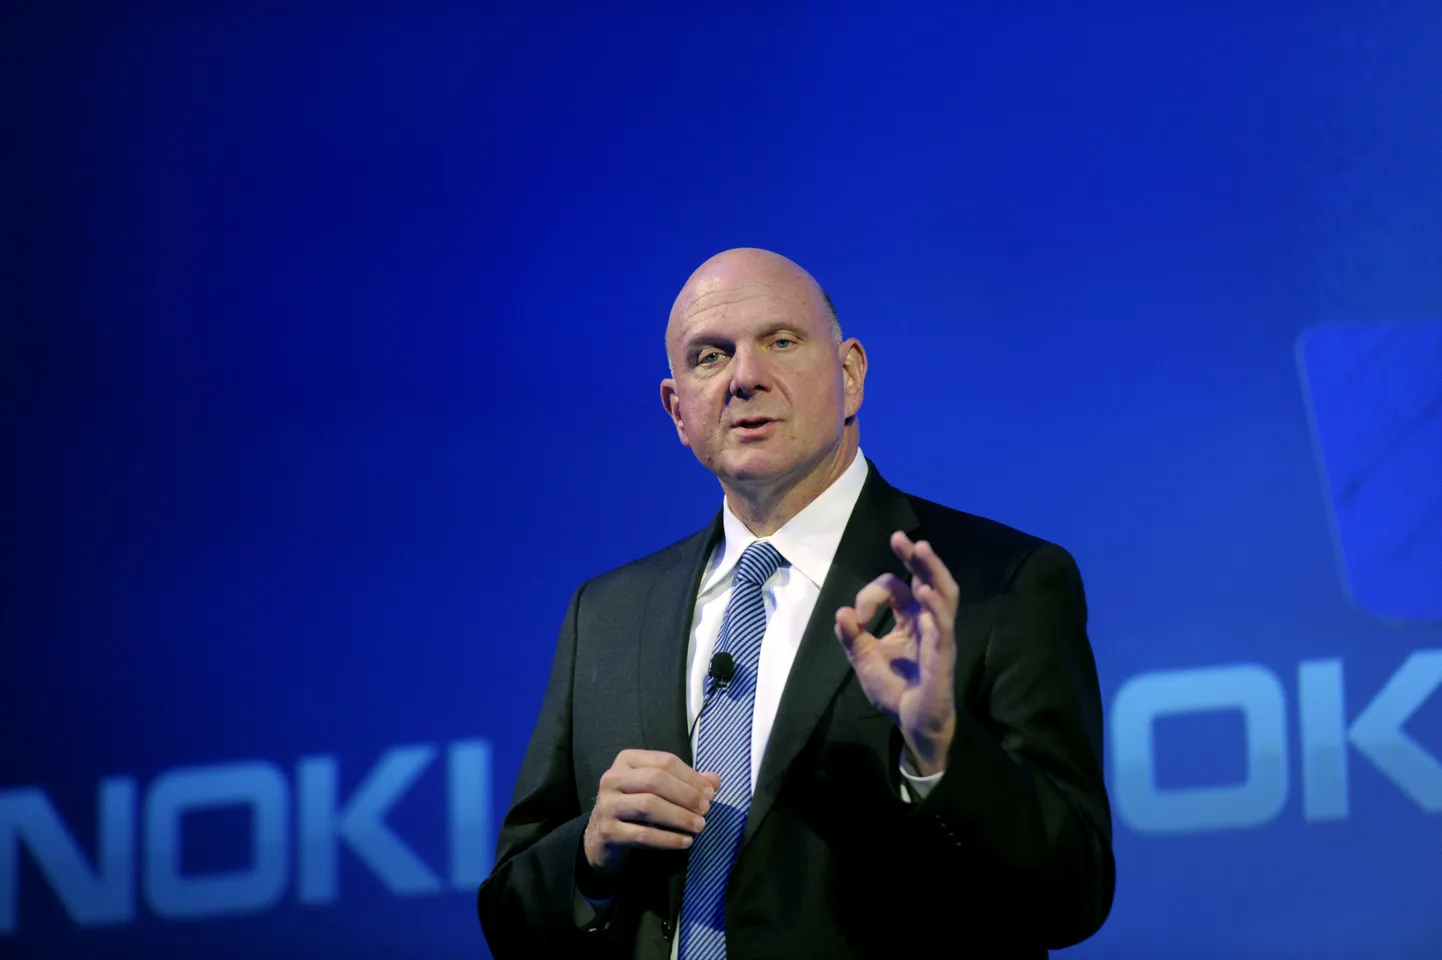 Micosofti juht Steve Ballmer lubas soomlastele andmekeskust Nokia mobiiliüksuse ostmise teate järgsel pressikonverentsil.